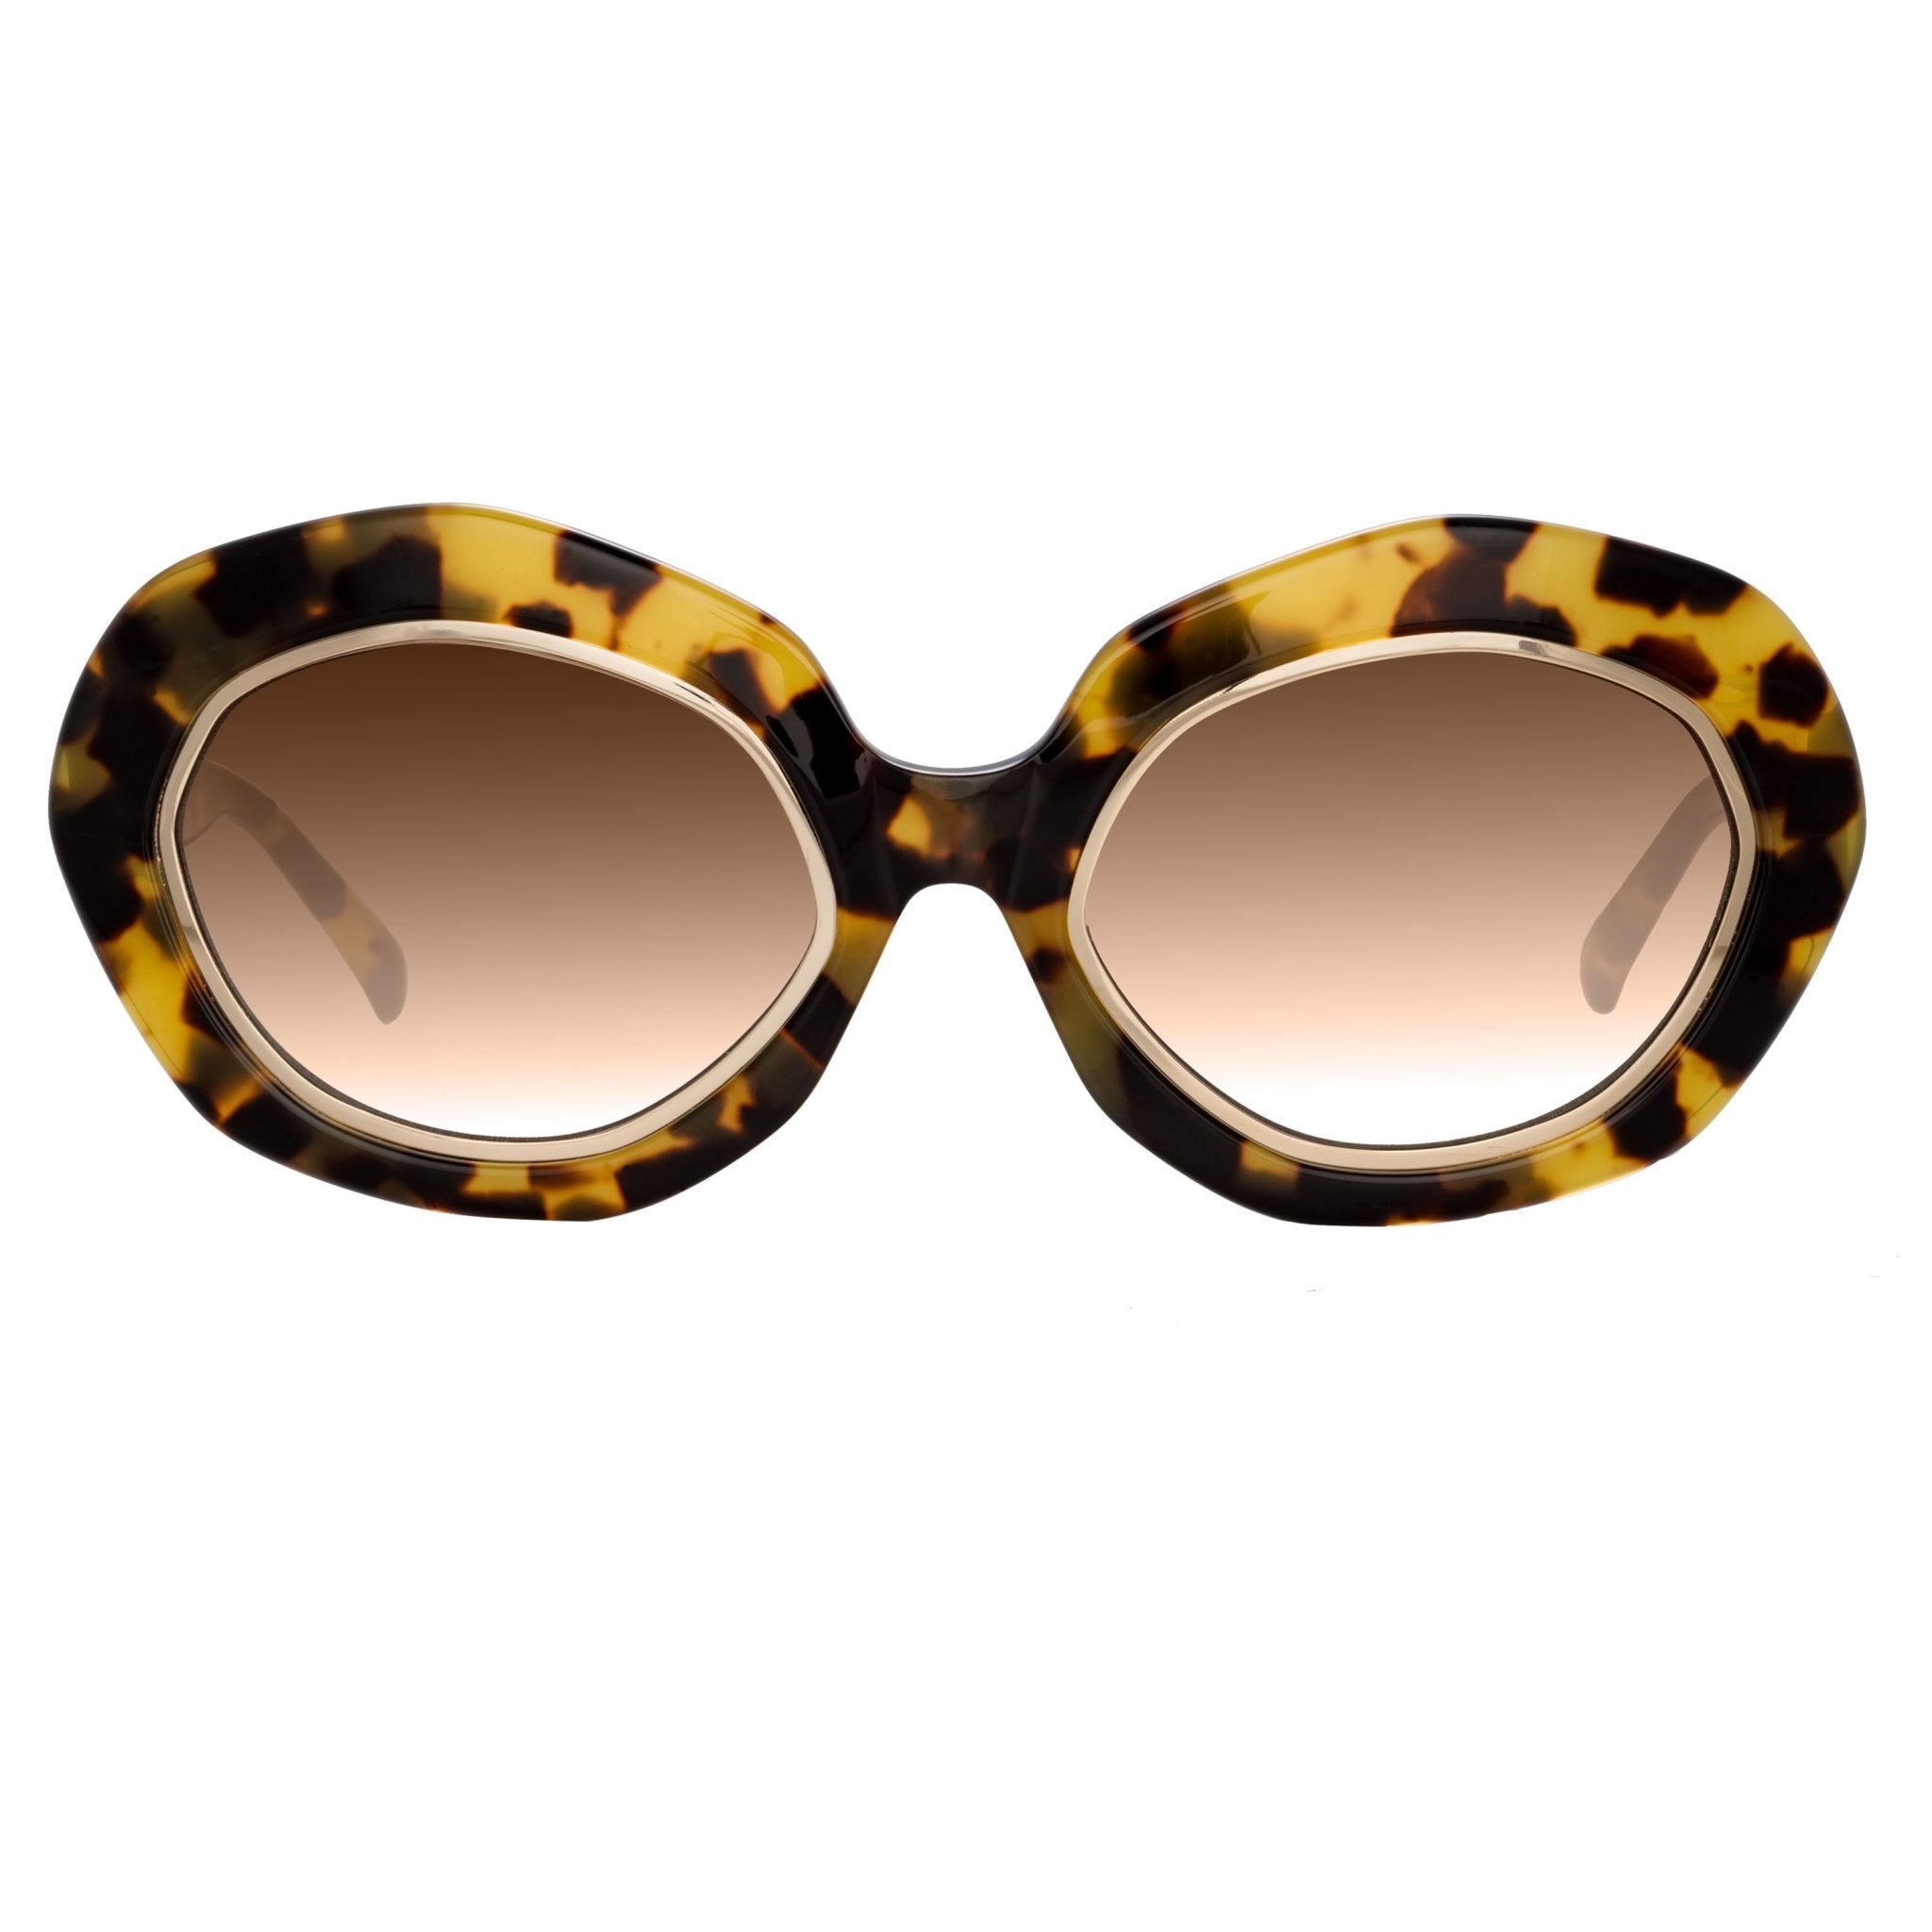 Tortoiseshell Gold Edge Designer Inspired Cat Eye Sunglasses - Product Freak